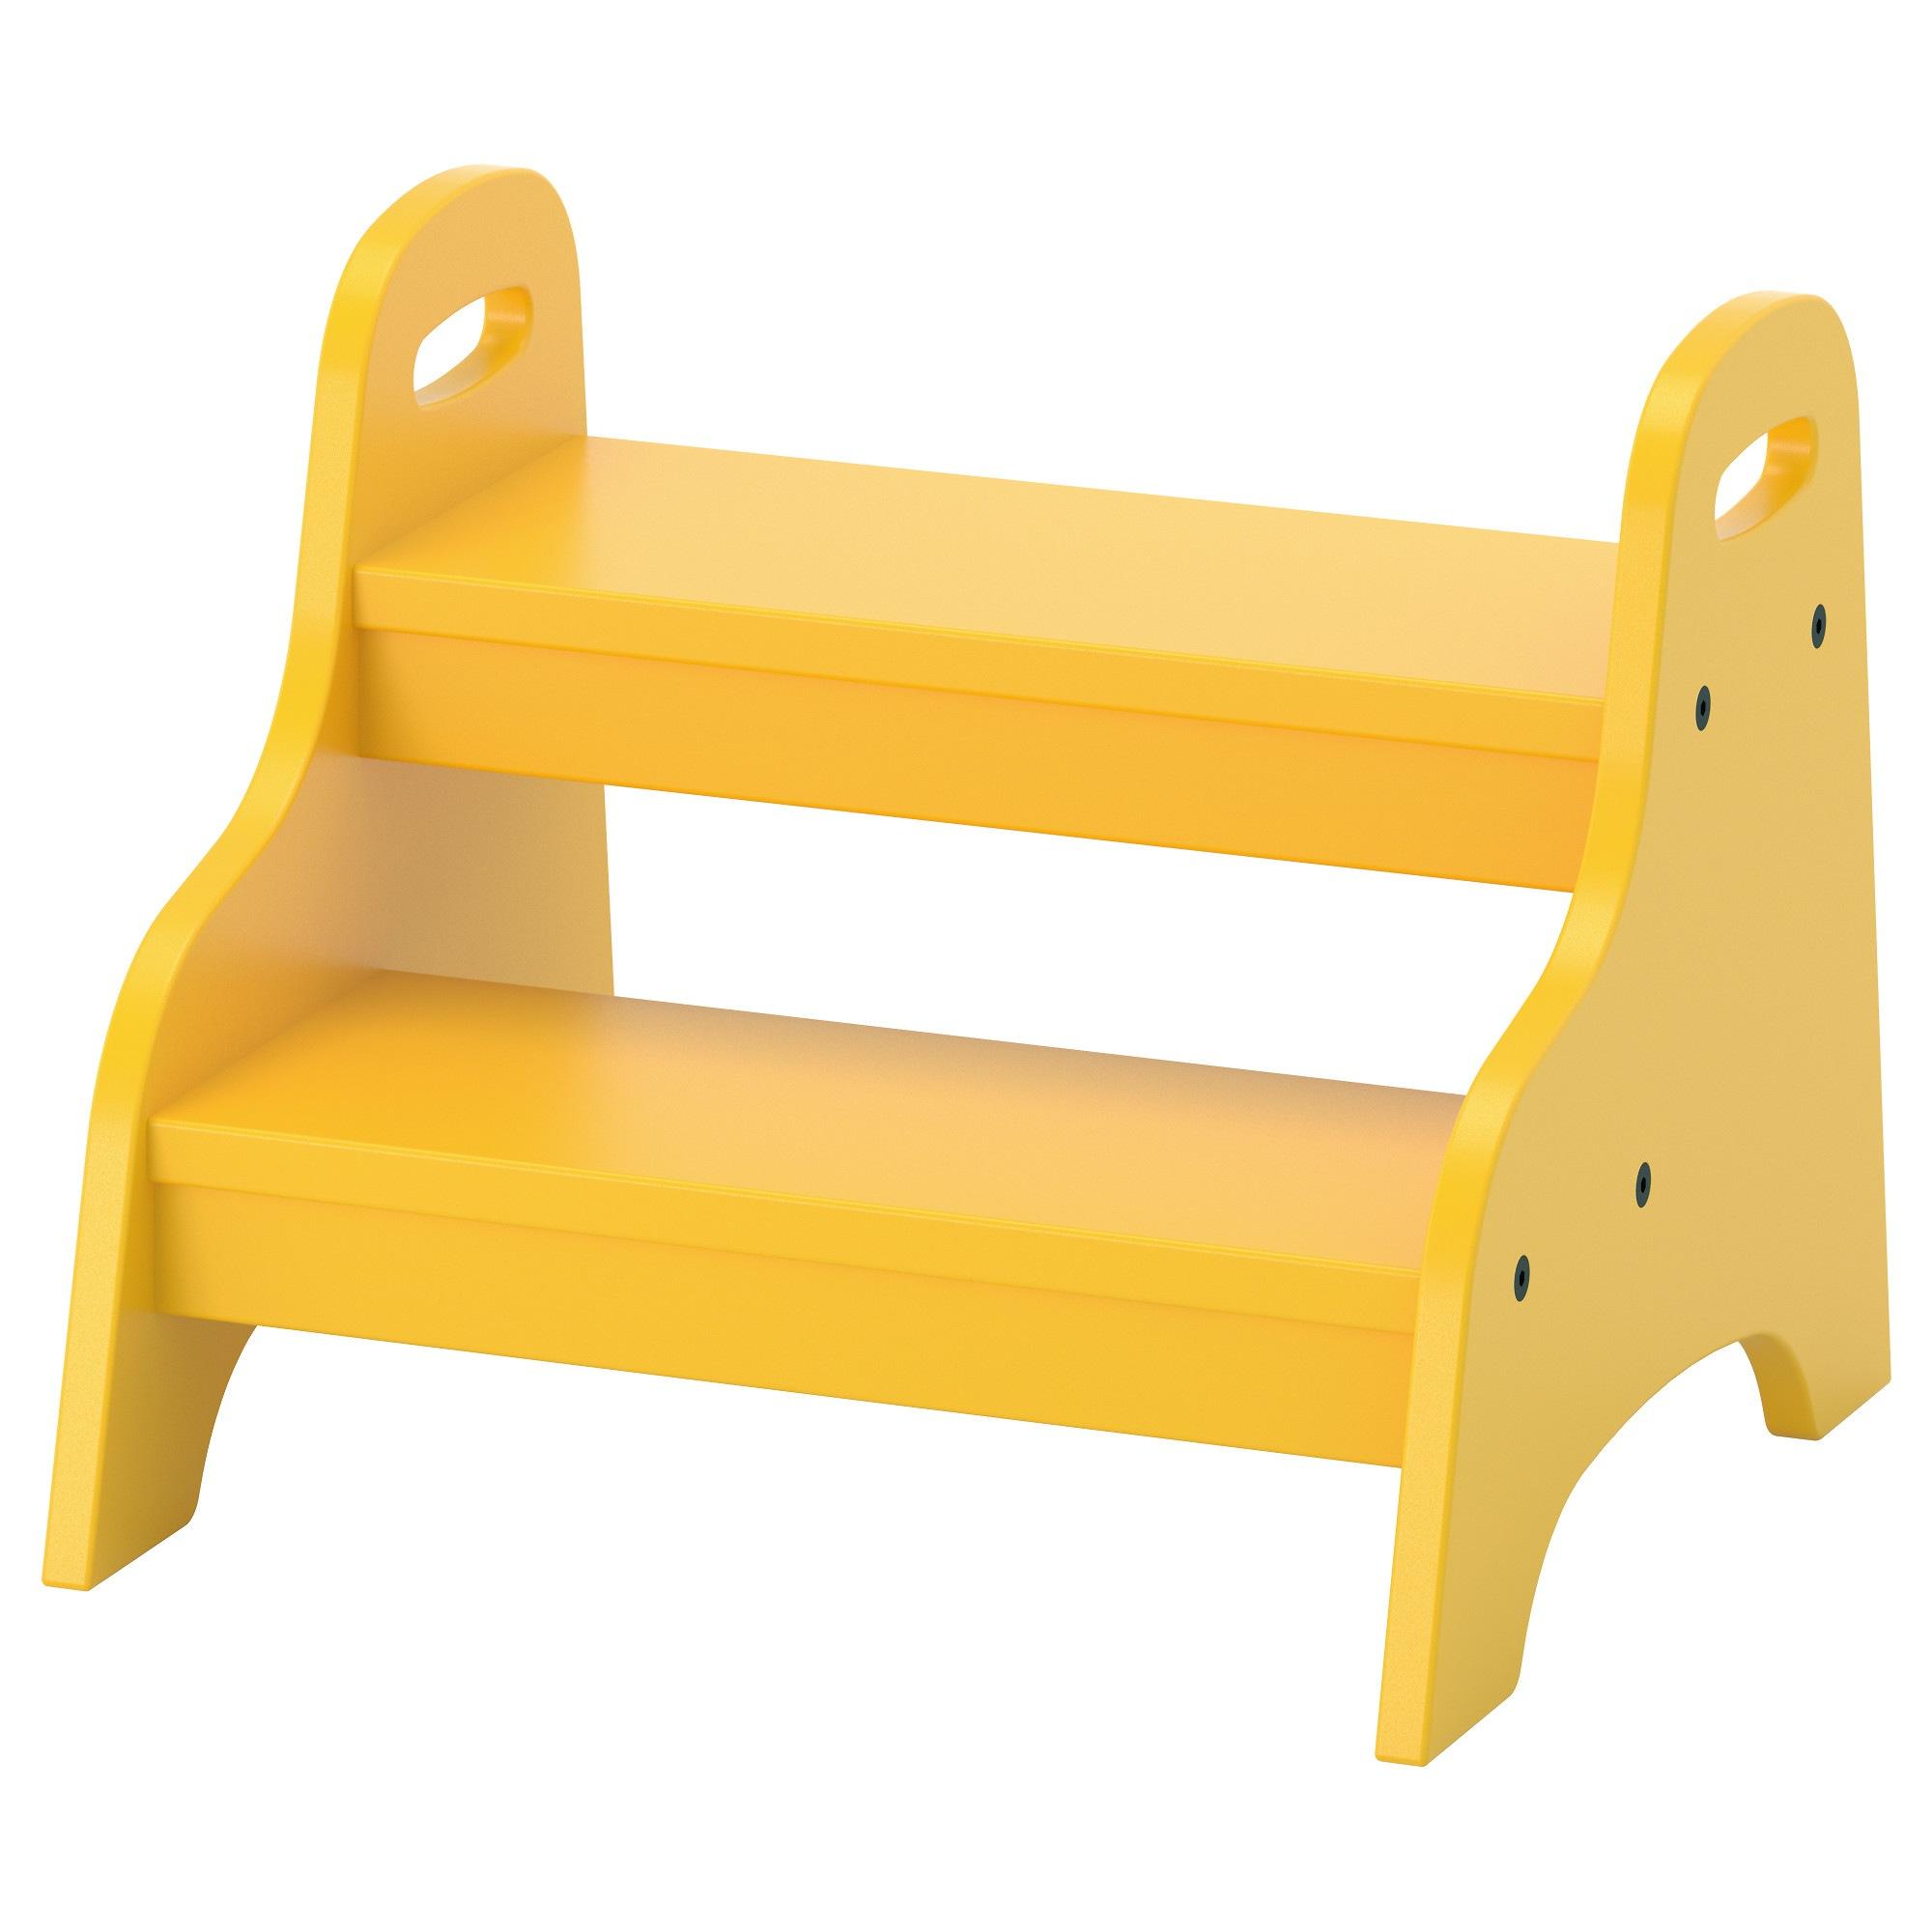 เก้าอี้เด็ก2ชั้น, เหลือง ขนาด 40x38x33 ซม. เก้าอี้ TROGEN  ขนาด 40x38x33 ซม.